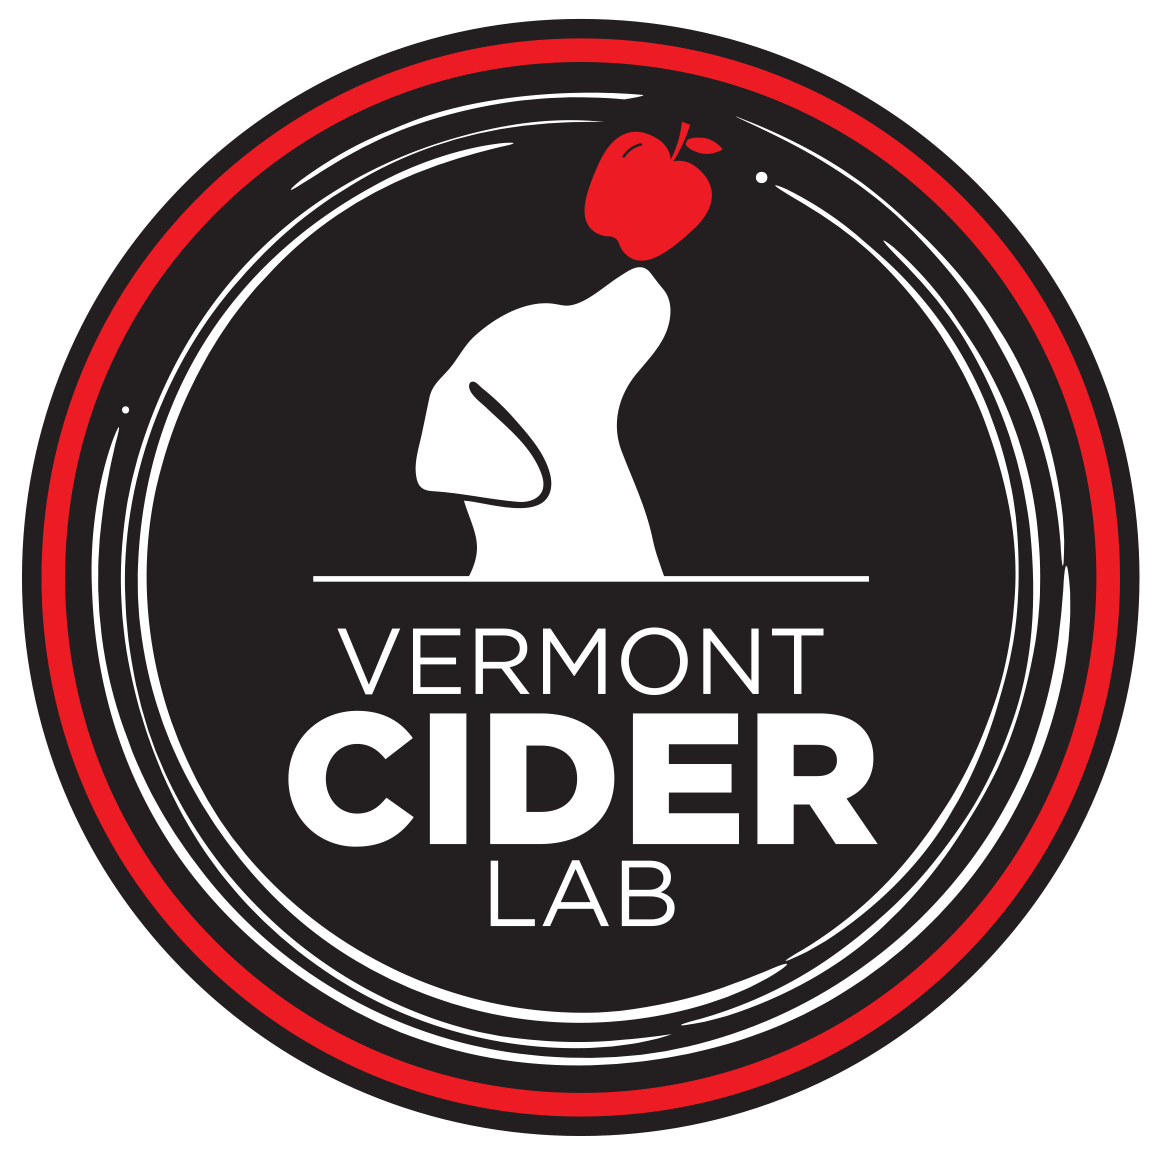 Vermont Cider Lab